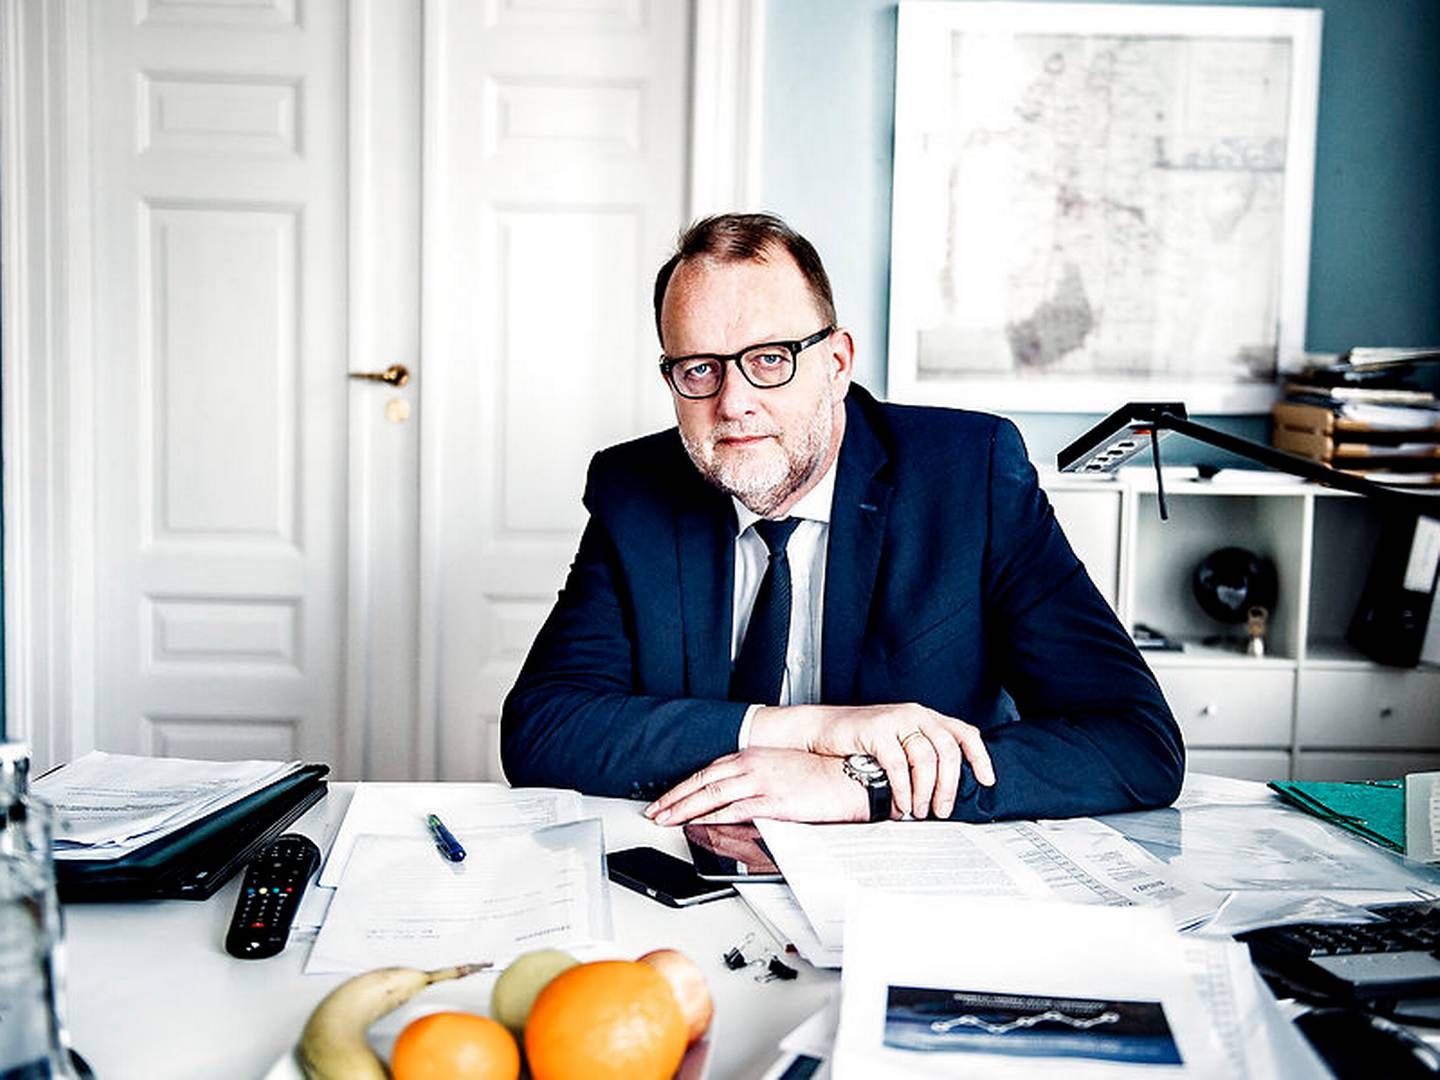 Klima- og energiminister Lars Christian Lilleholt (V) glæder sig over, at regeringen nu vil fjerne affaldsgebyr for virksomheder. | Foto: Emil Hougaard/Ritzau Scanpix